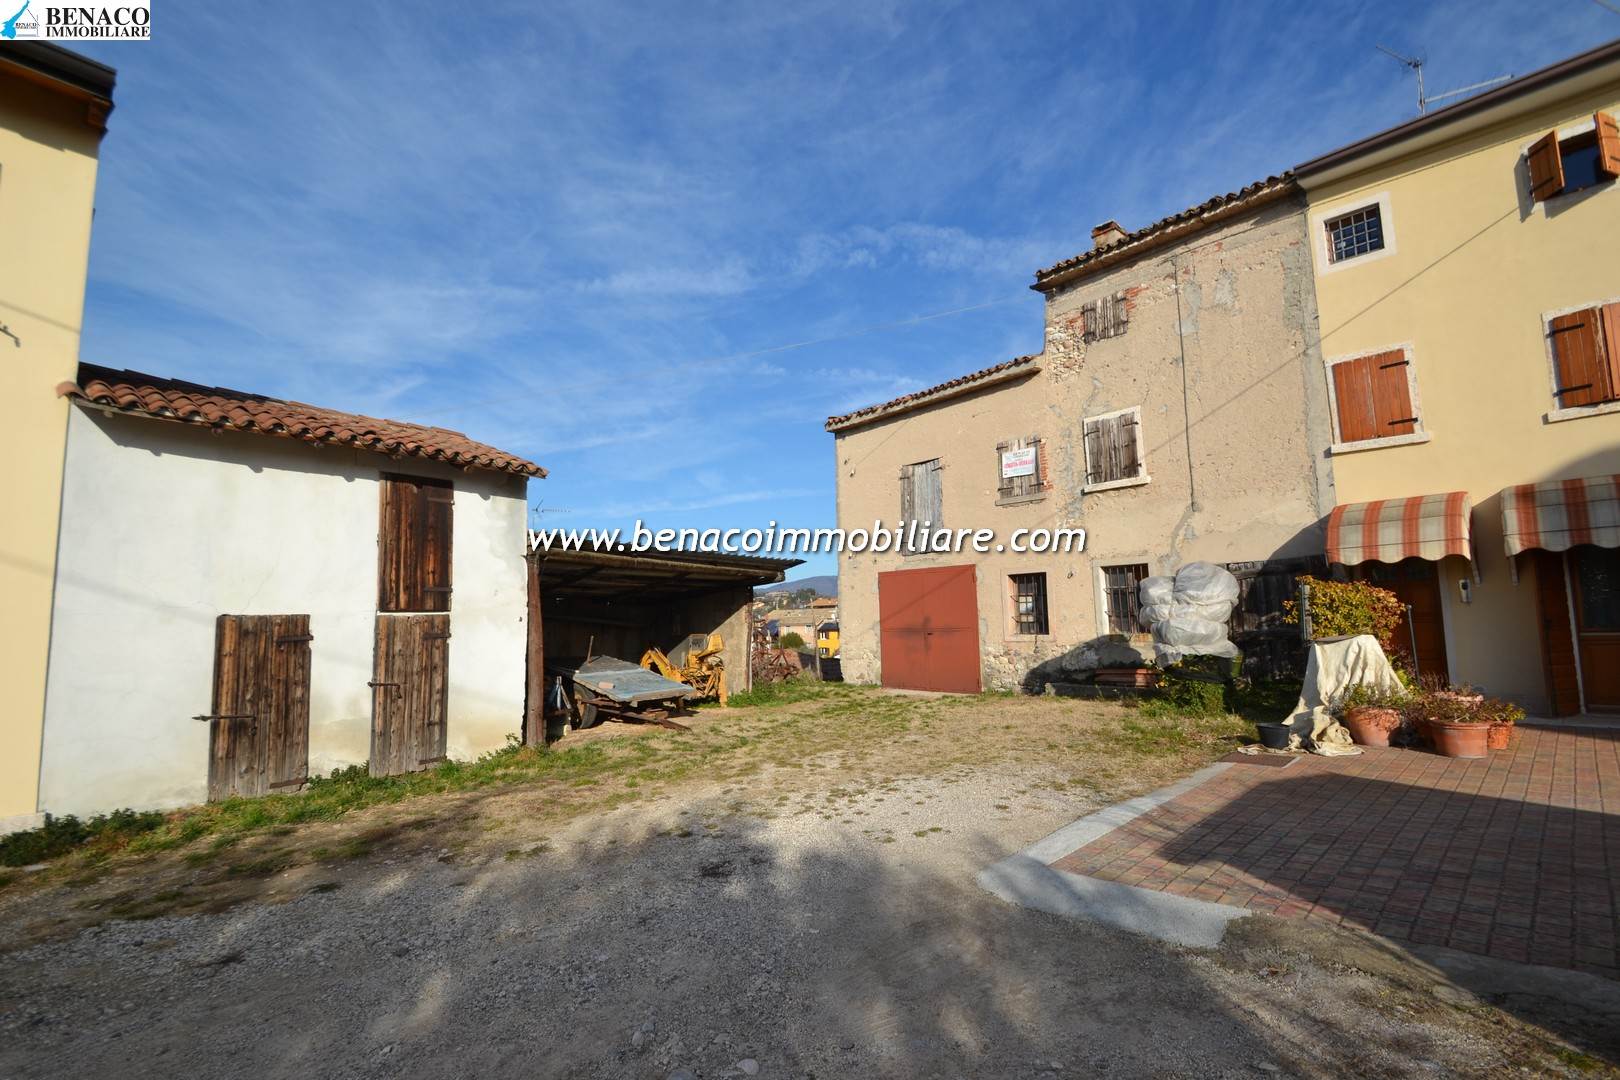 Rustico / Casale in vendita a Cavaion Veronese, 8 locali, prezzo € 420.000 | PortaleAgenzieImmobiliari.it